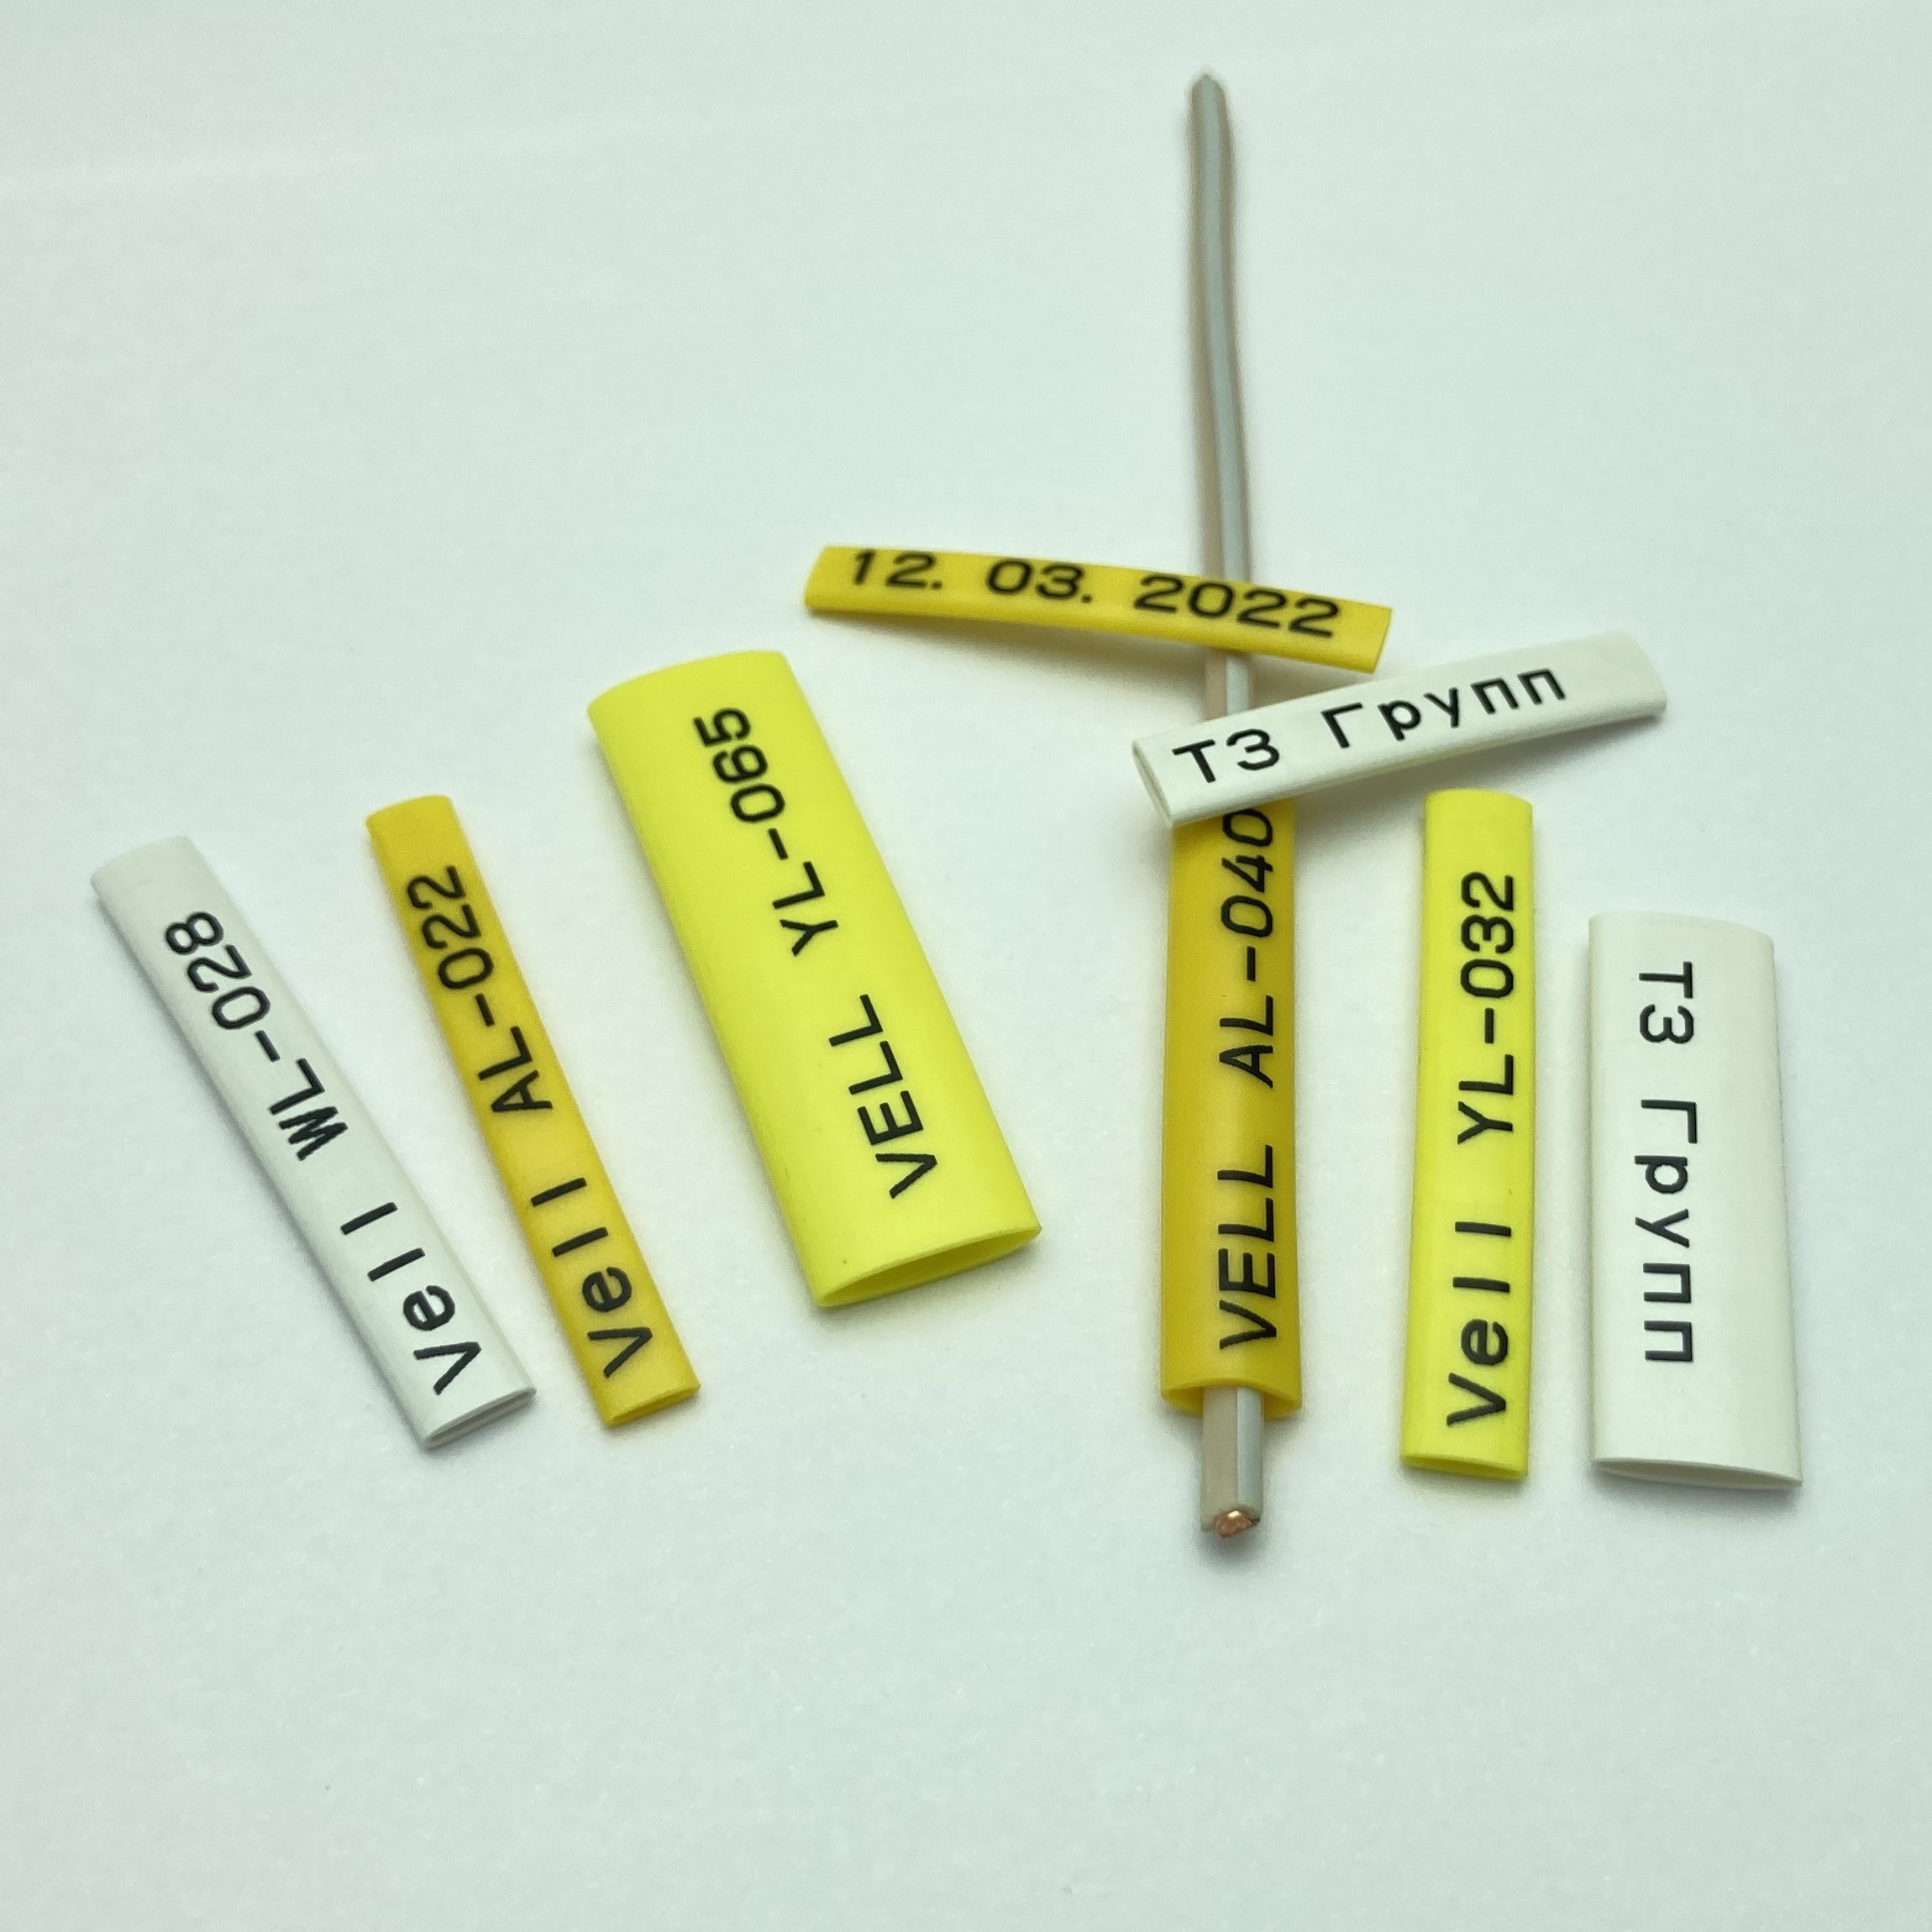 Фото Профиль ПВХ овальный Vell YL-040 для маркировки проводов, Ø 4,0 мм, 200 метров, желтый, аналог Partex PO-07 (самозатухающий) {378024} (4)